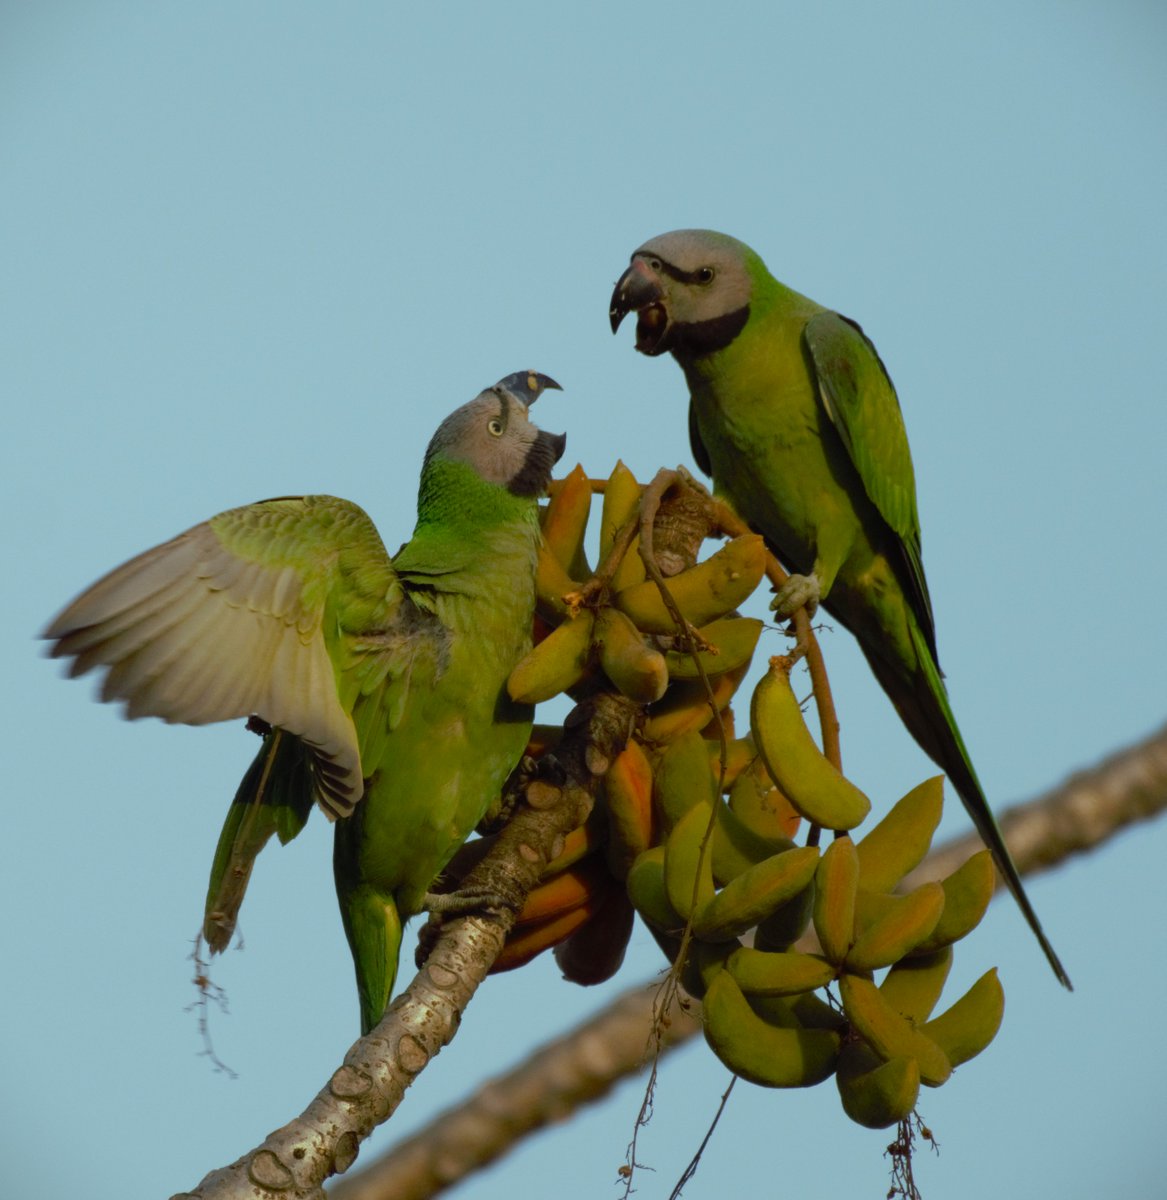 Red Breasted Parakeet (Juveniles)
Assam
#VIBGYORinNature 
#IndiAves 
#TwitterNatureCommunity #NaturePhotography #birding @NatGeoIndia #birdsofindia